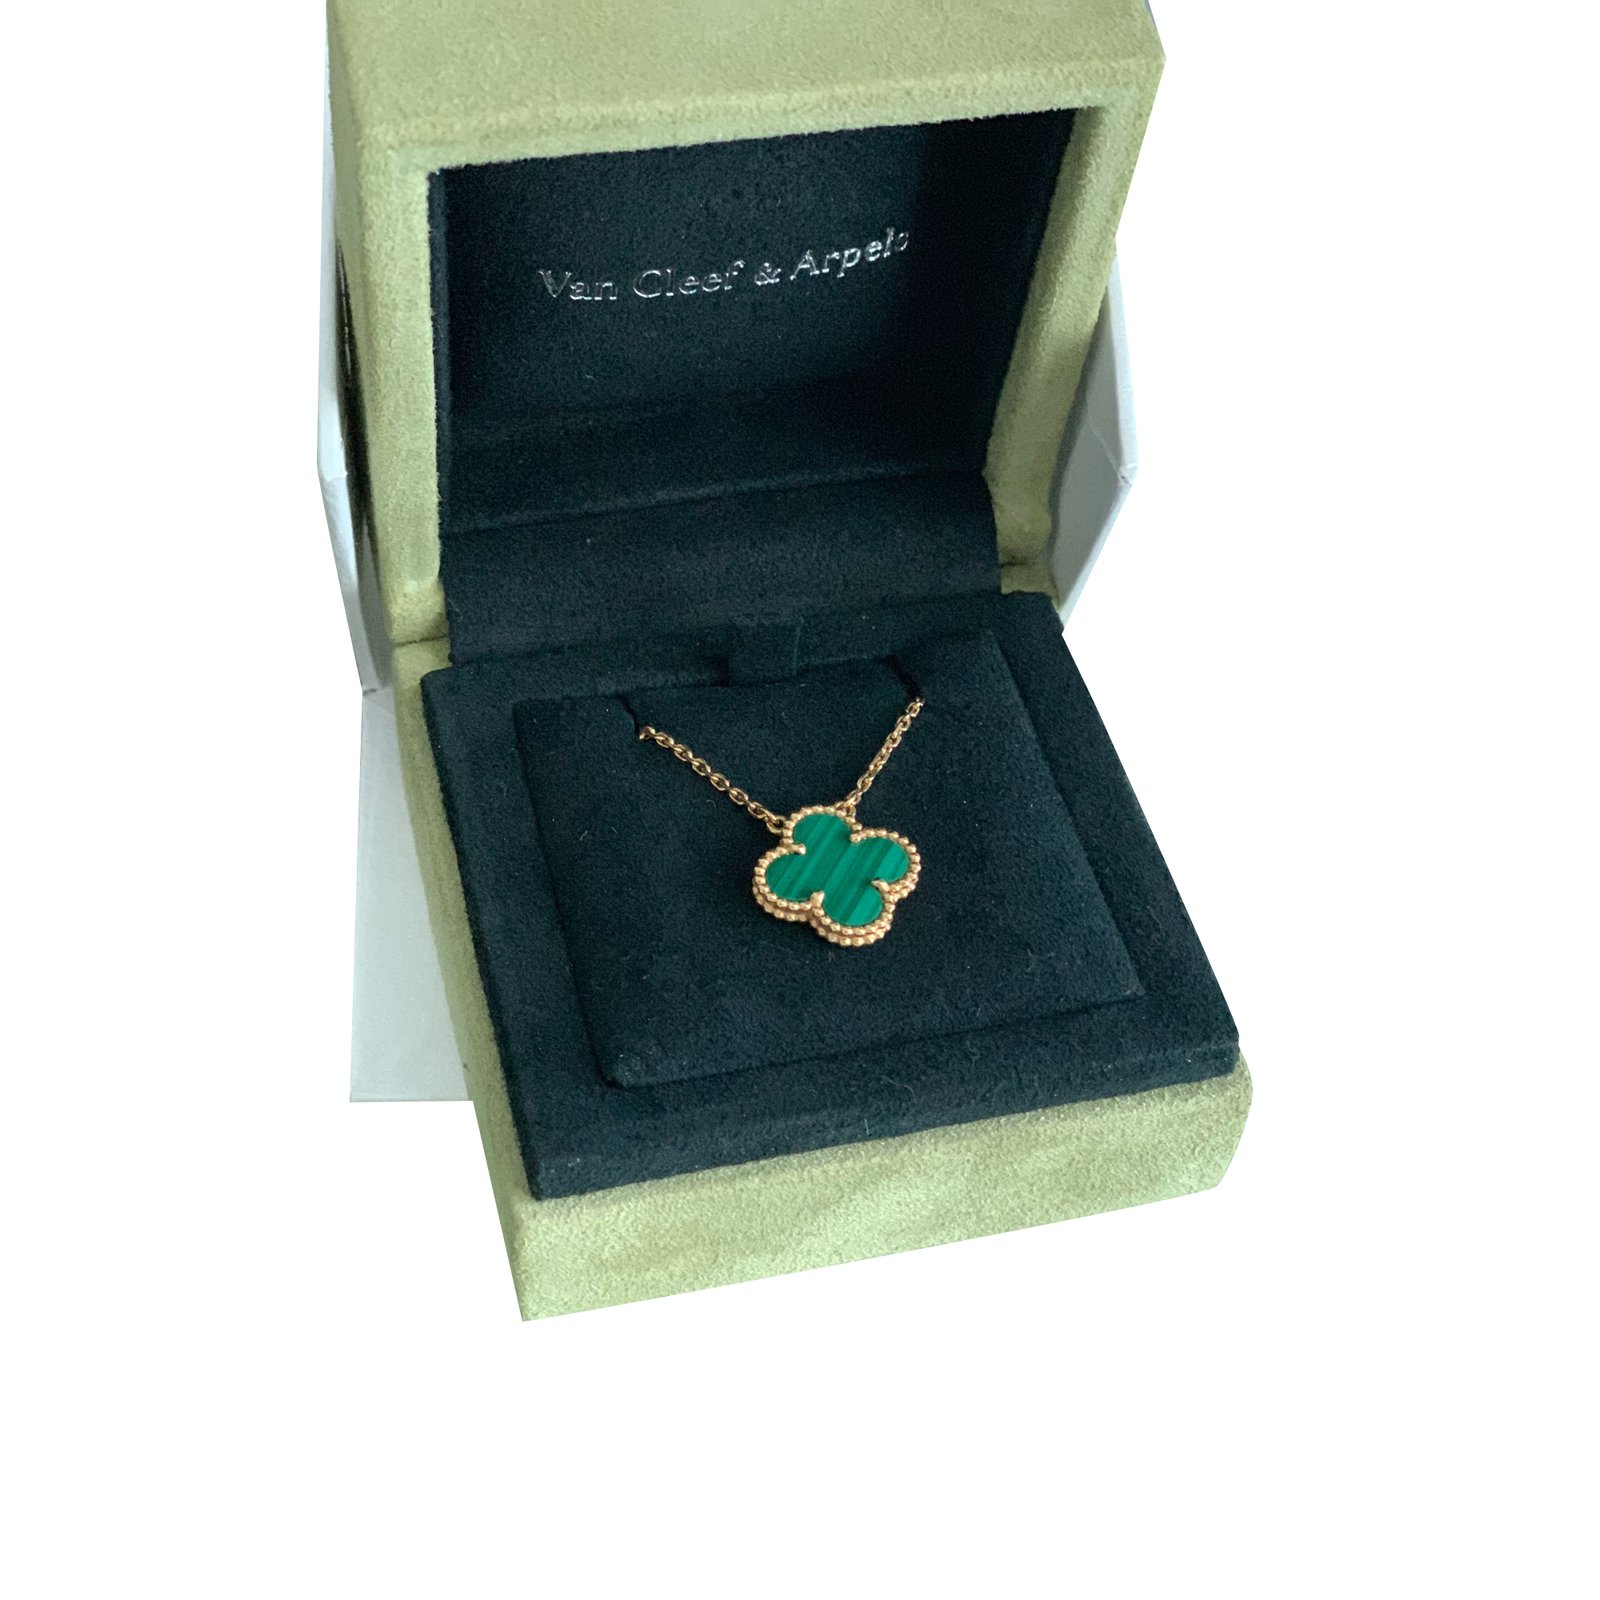 van cleef and arpels necklace green